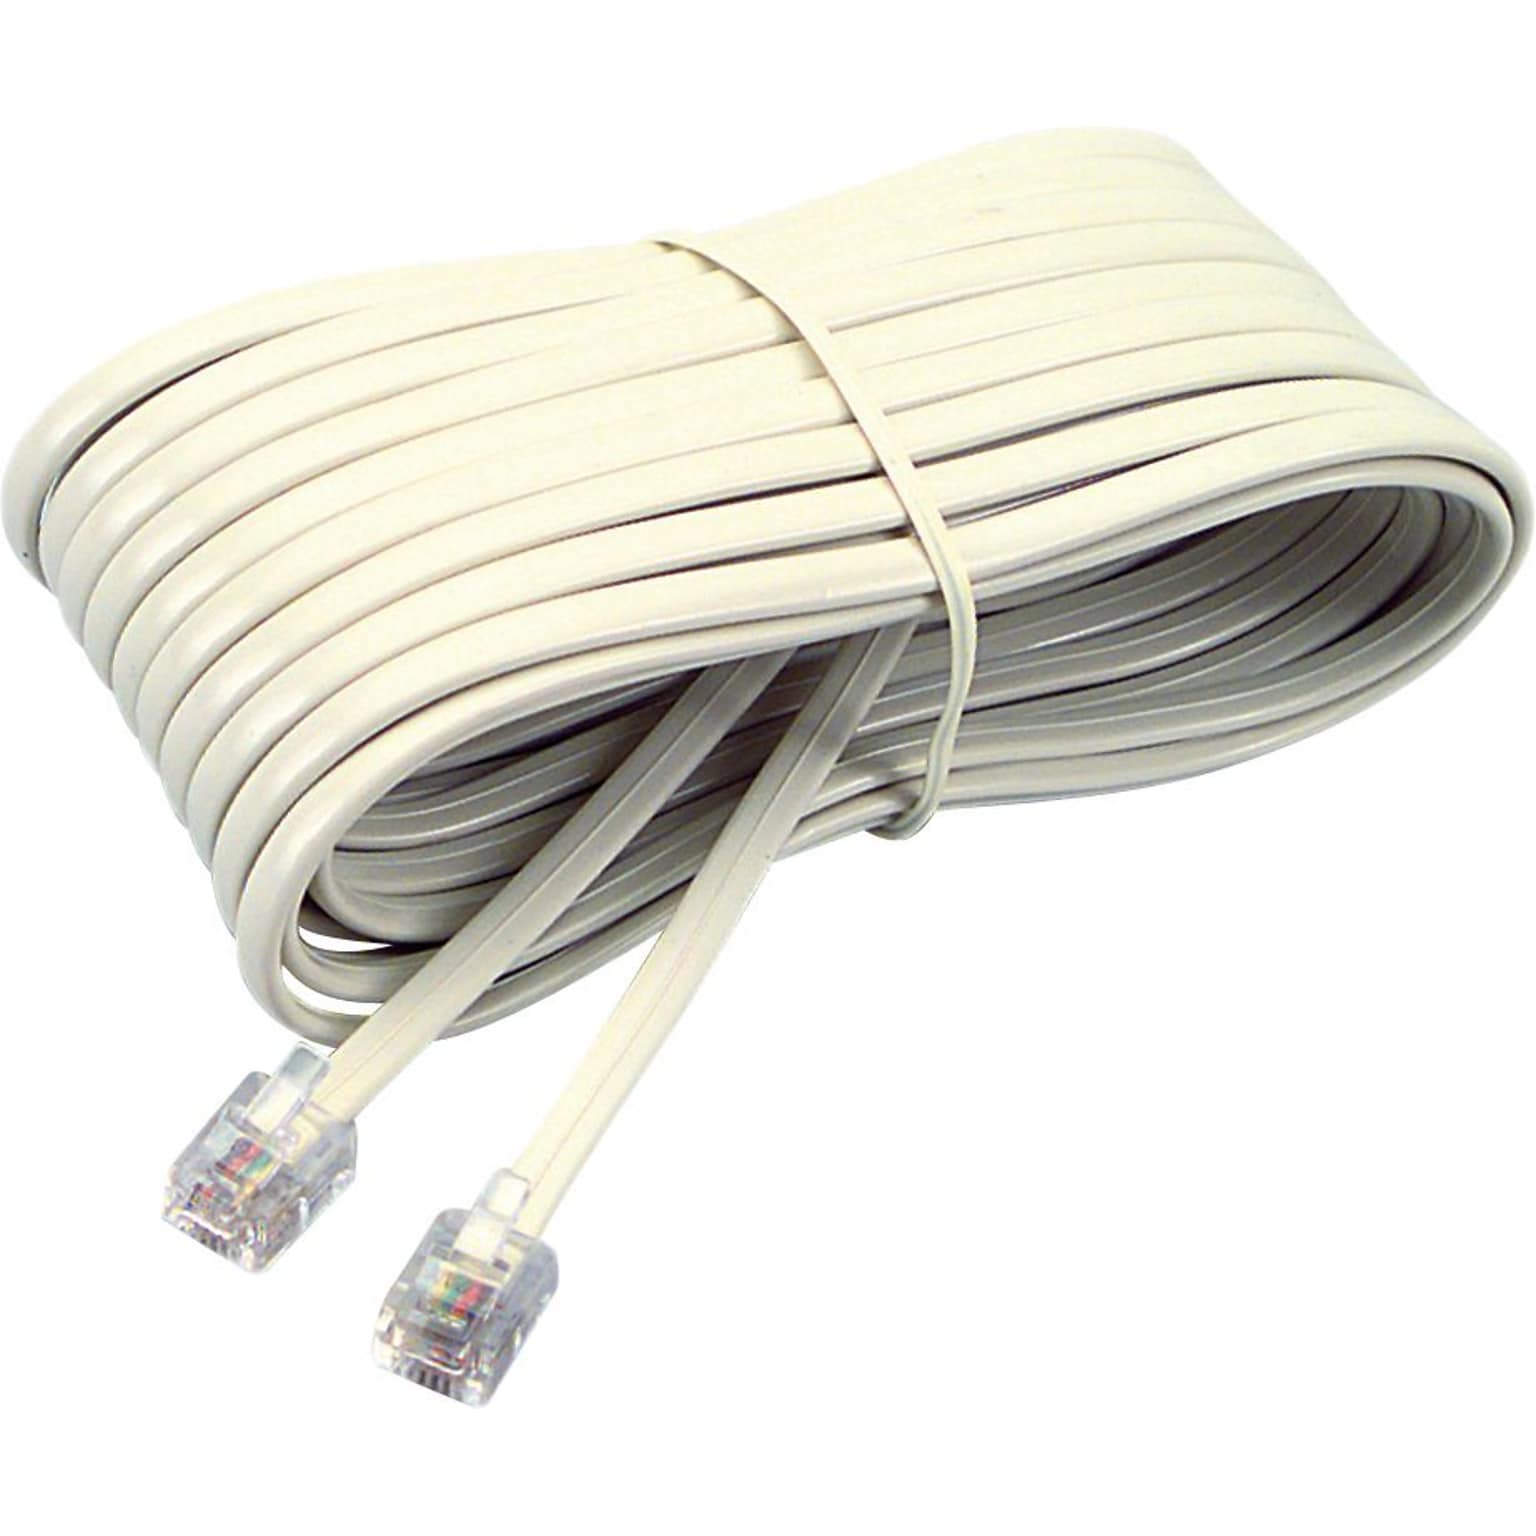 Softalk® Telephone Extensions Cord, Plug/Plug, Ivory, 25ft